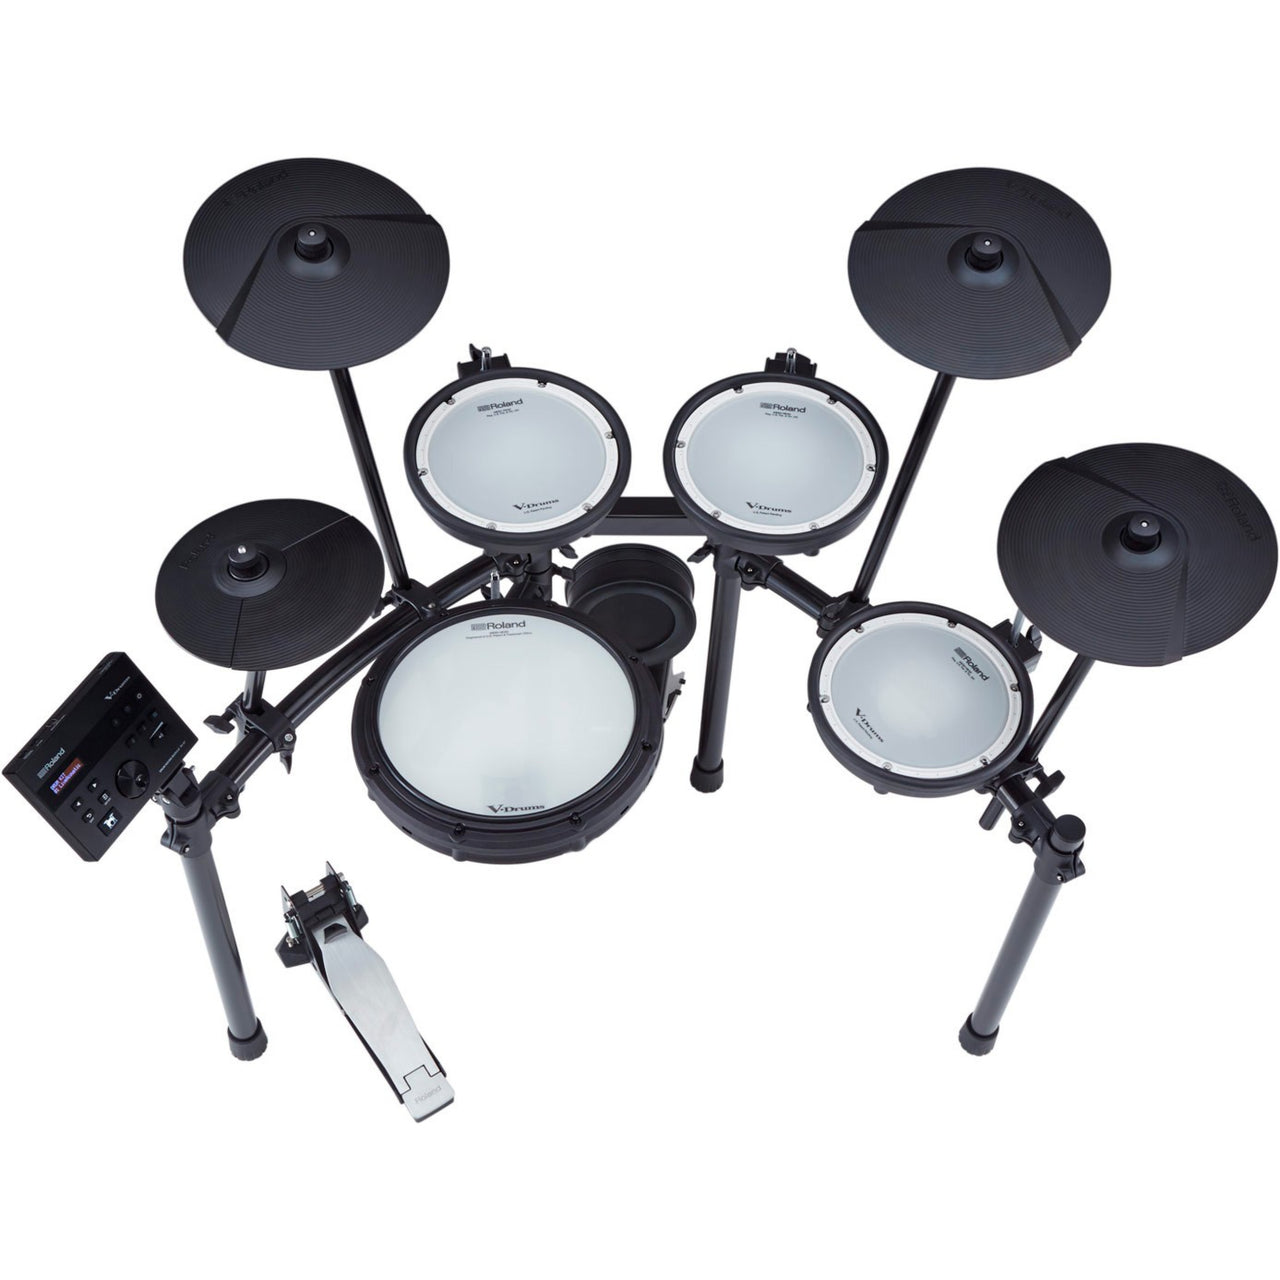 Bateria Roland Electrica V-drums, Td-07kx-s